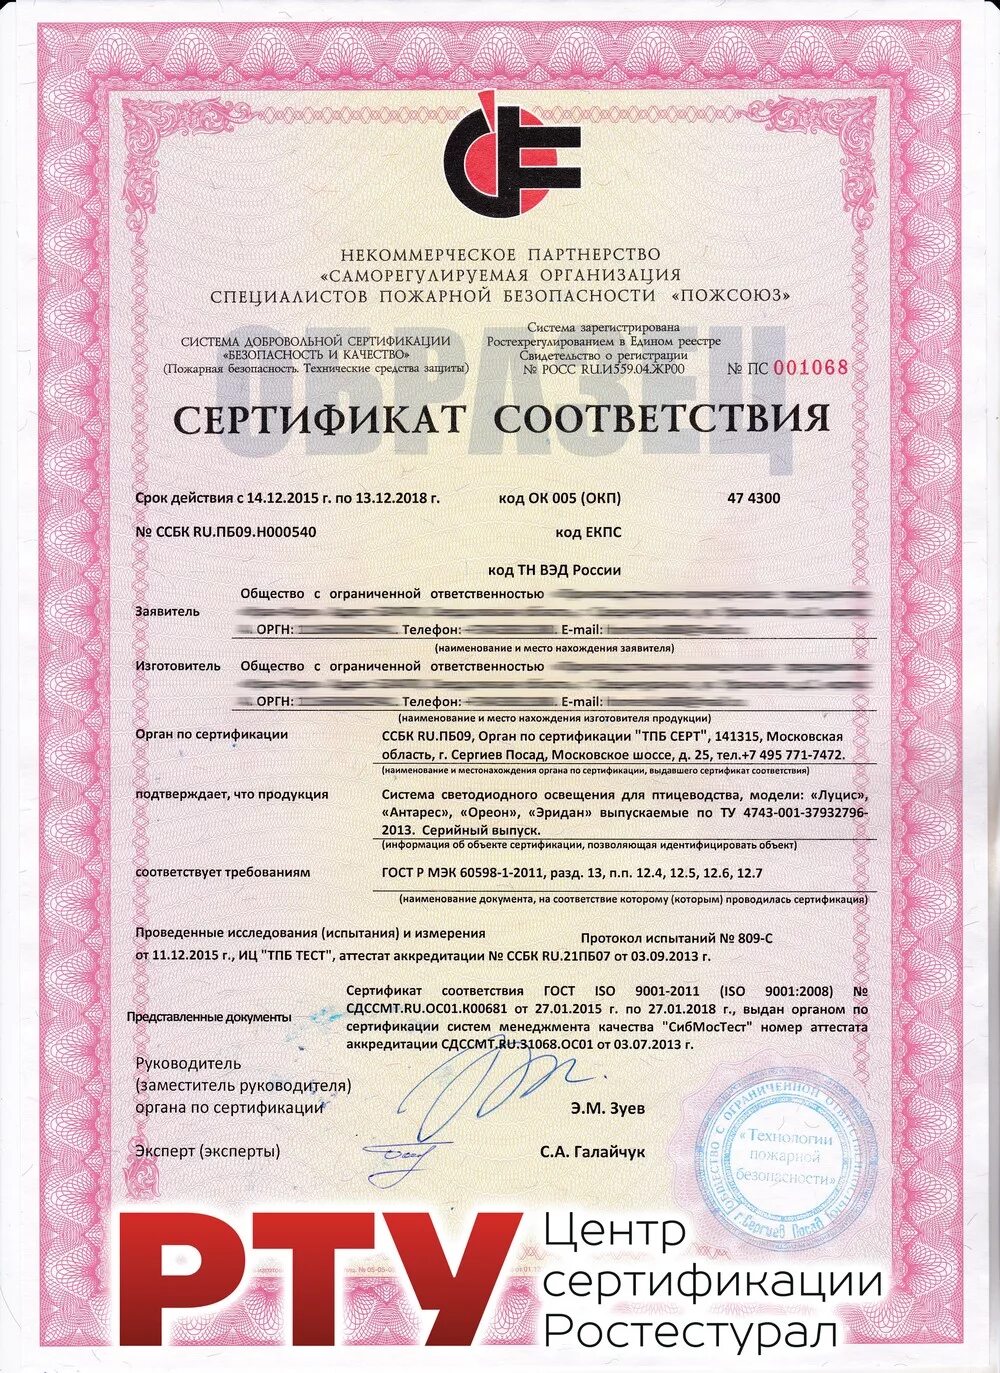 Сертификат безопасности материала. Сертификат пожарной безопасности. Сертификаты пожарной безопасности на отделочные материалы. Пожарные сертификаты на строительные материалы. Сертификат соответствия пожарной безопасности.